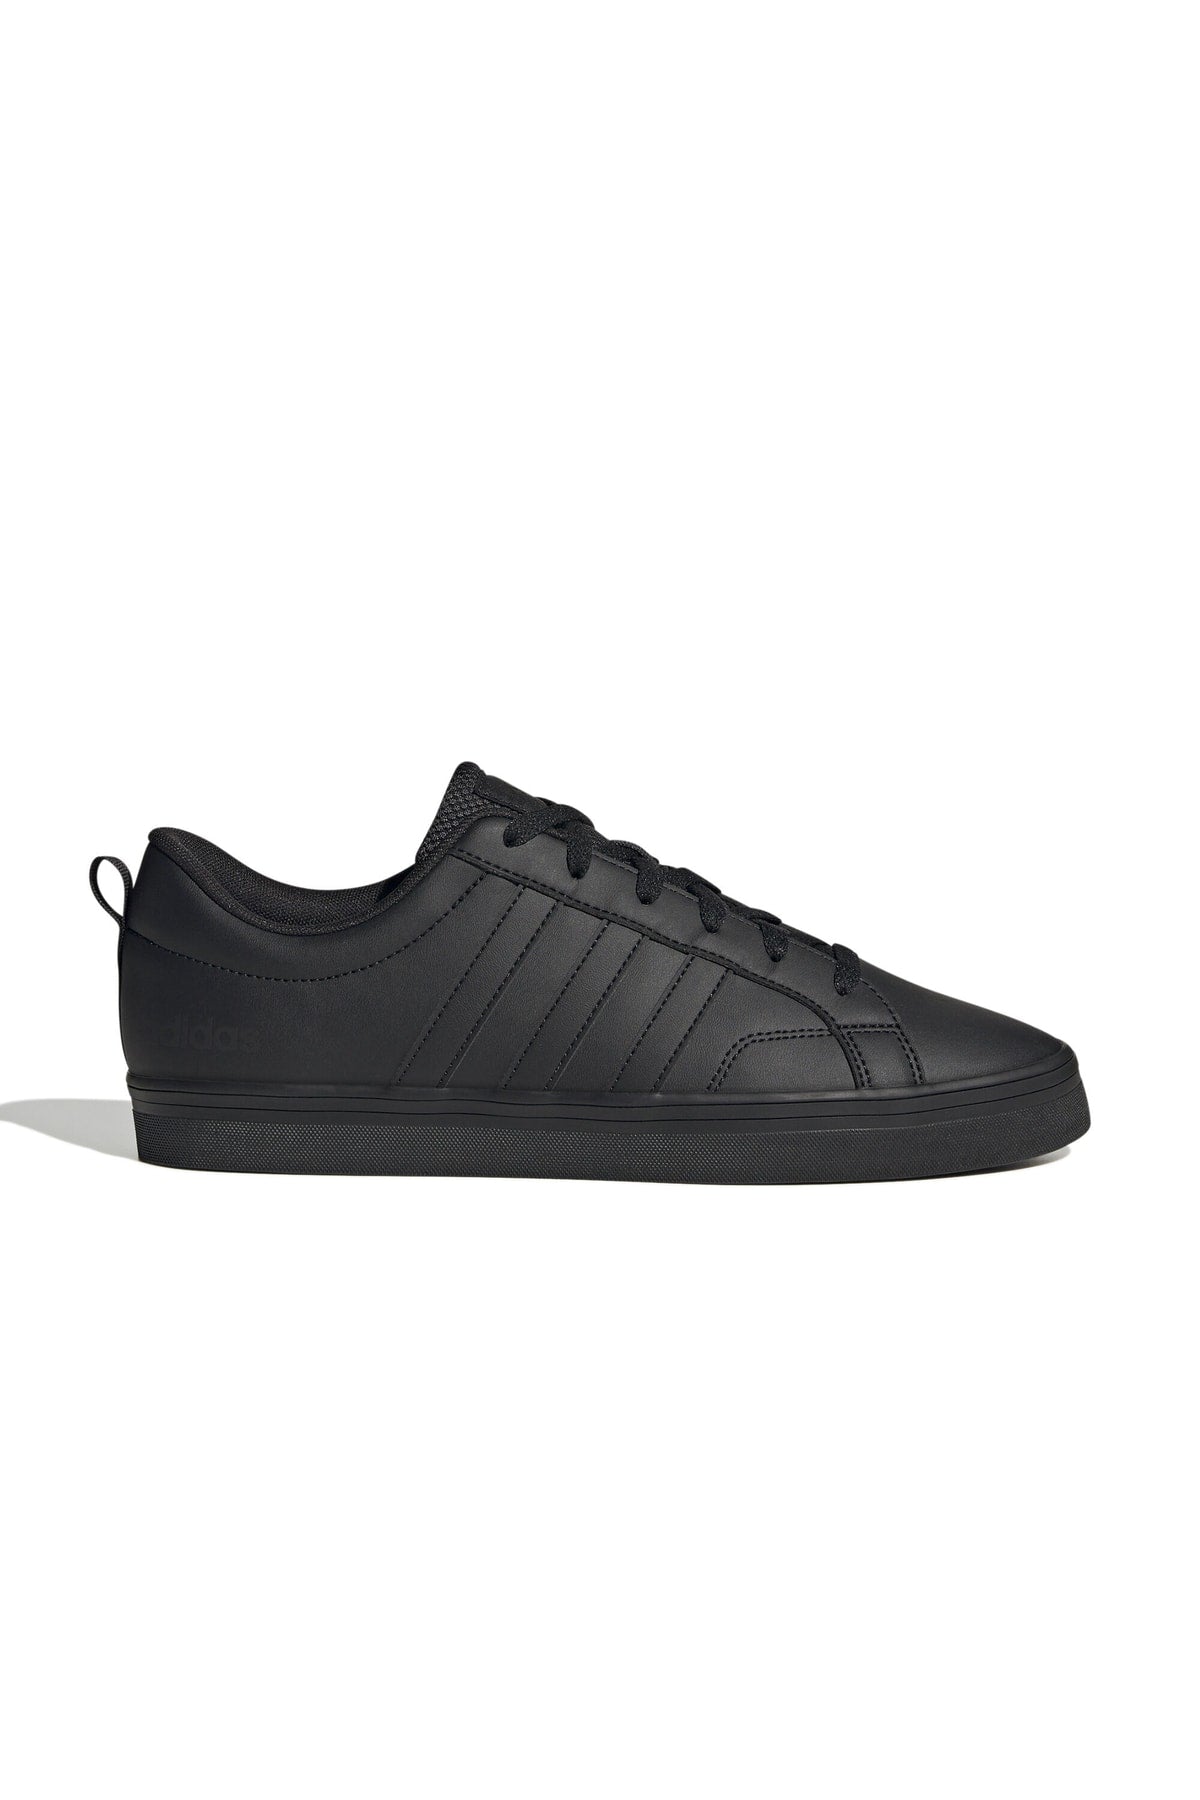 Vs Pace 2.0 Men's Casual Shoes Hp6008 Black